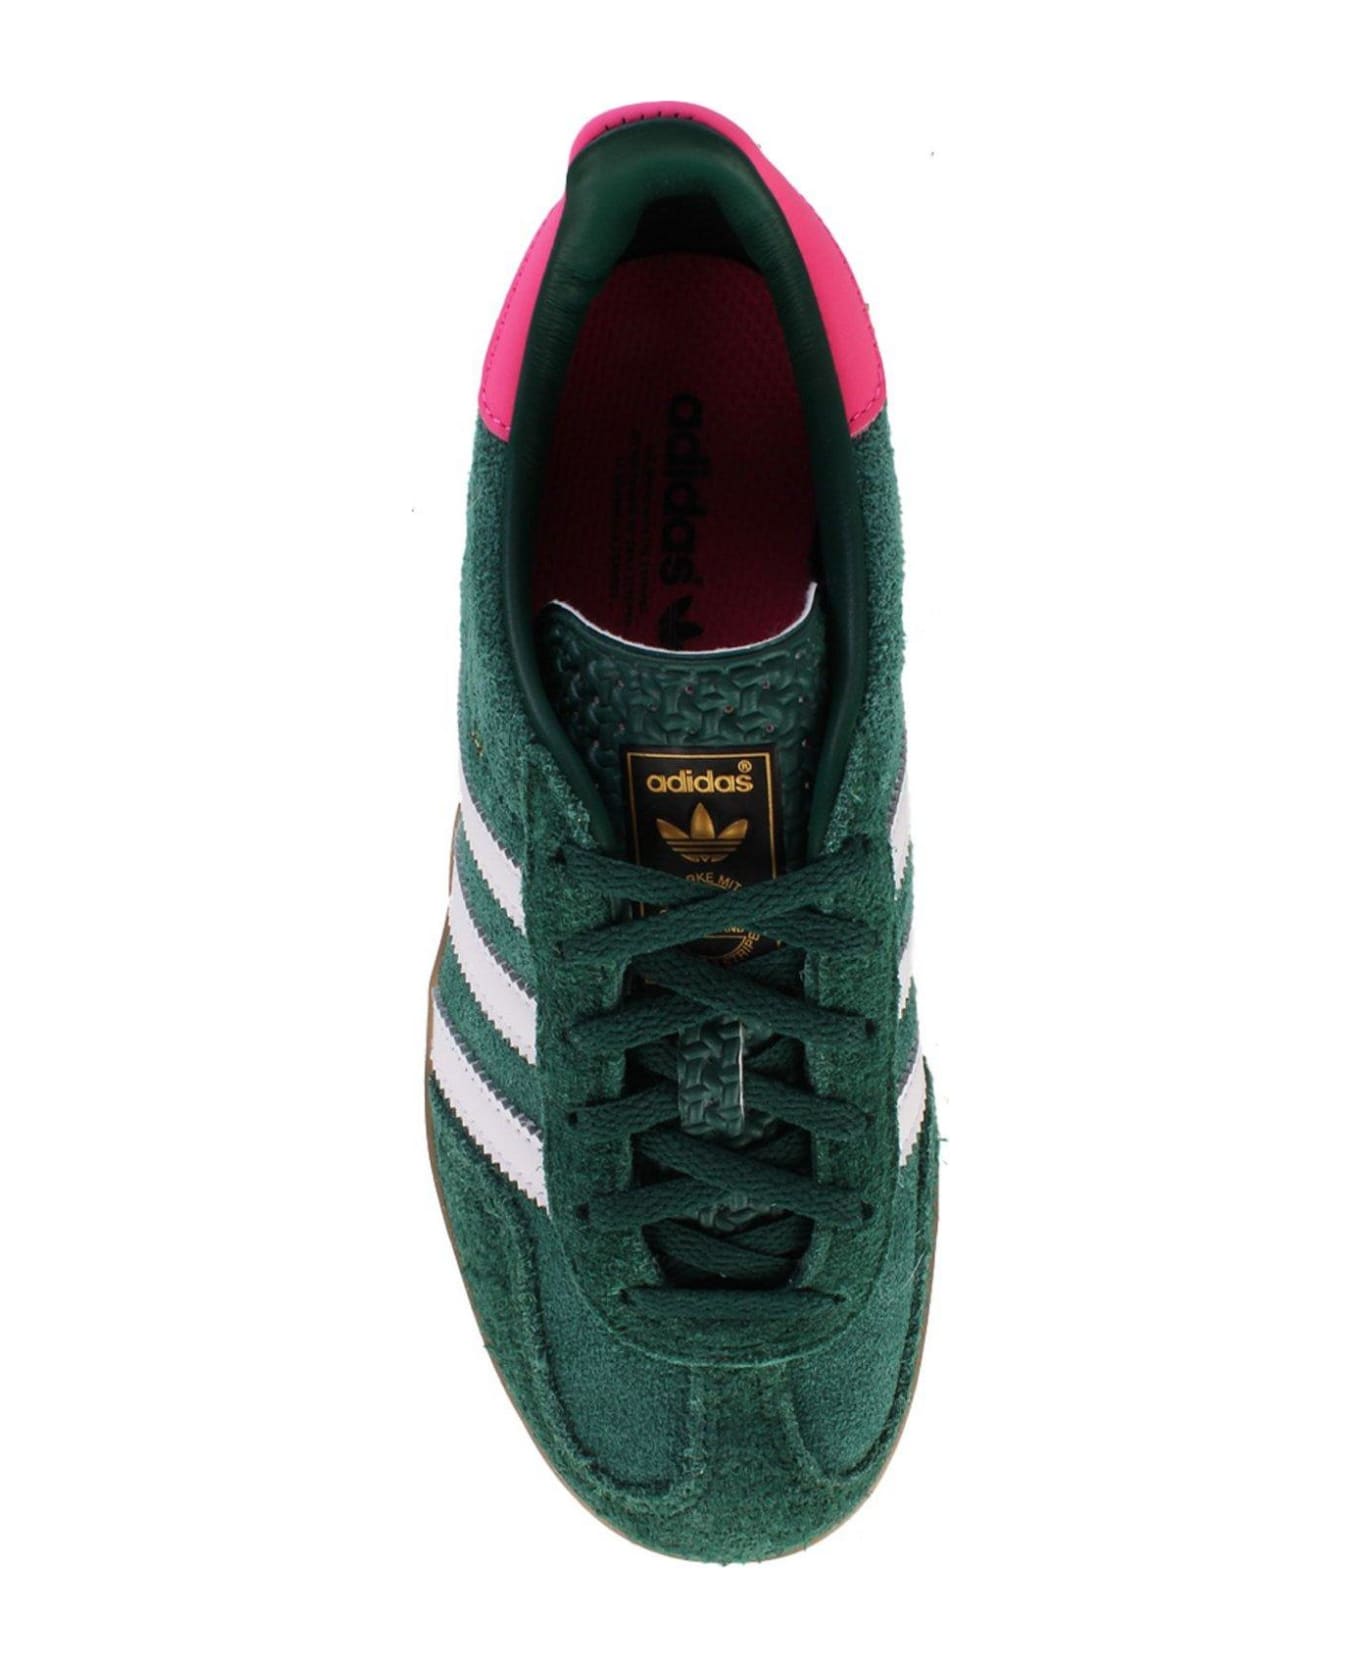 Adidas Originals Gazelle Low-top Sneakers - Green Pink